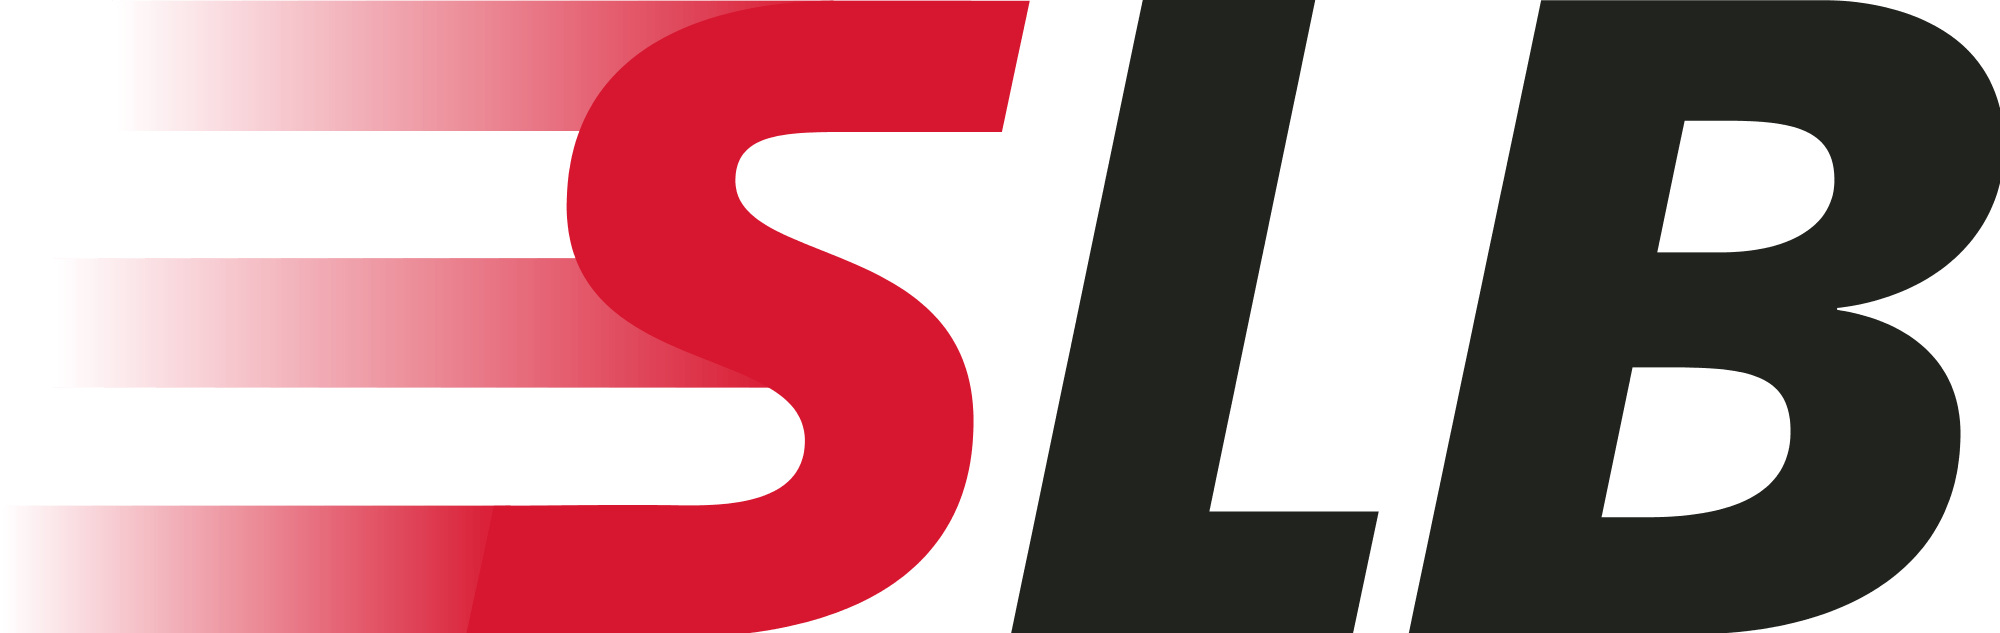 SLB Logo - Schlumberger Logos